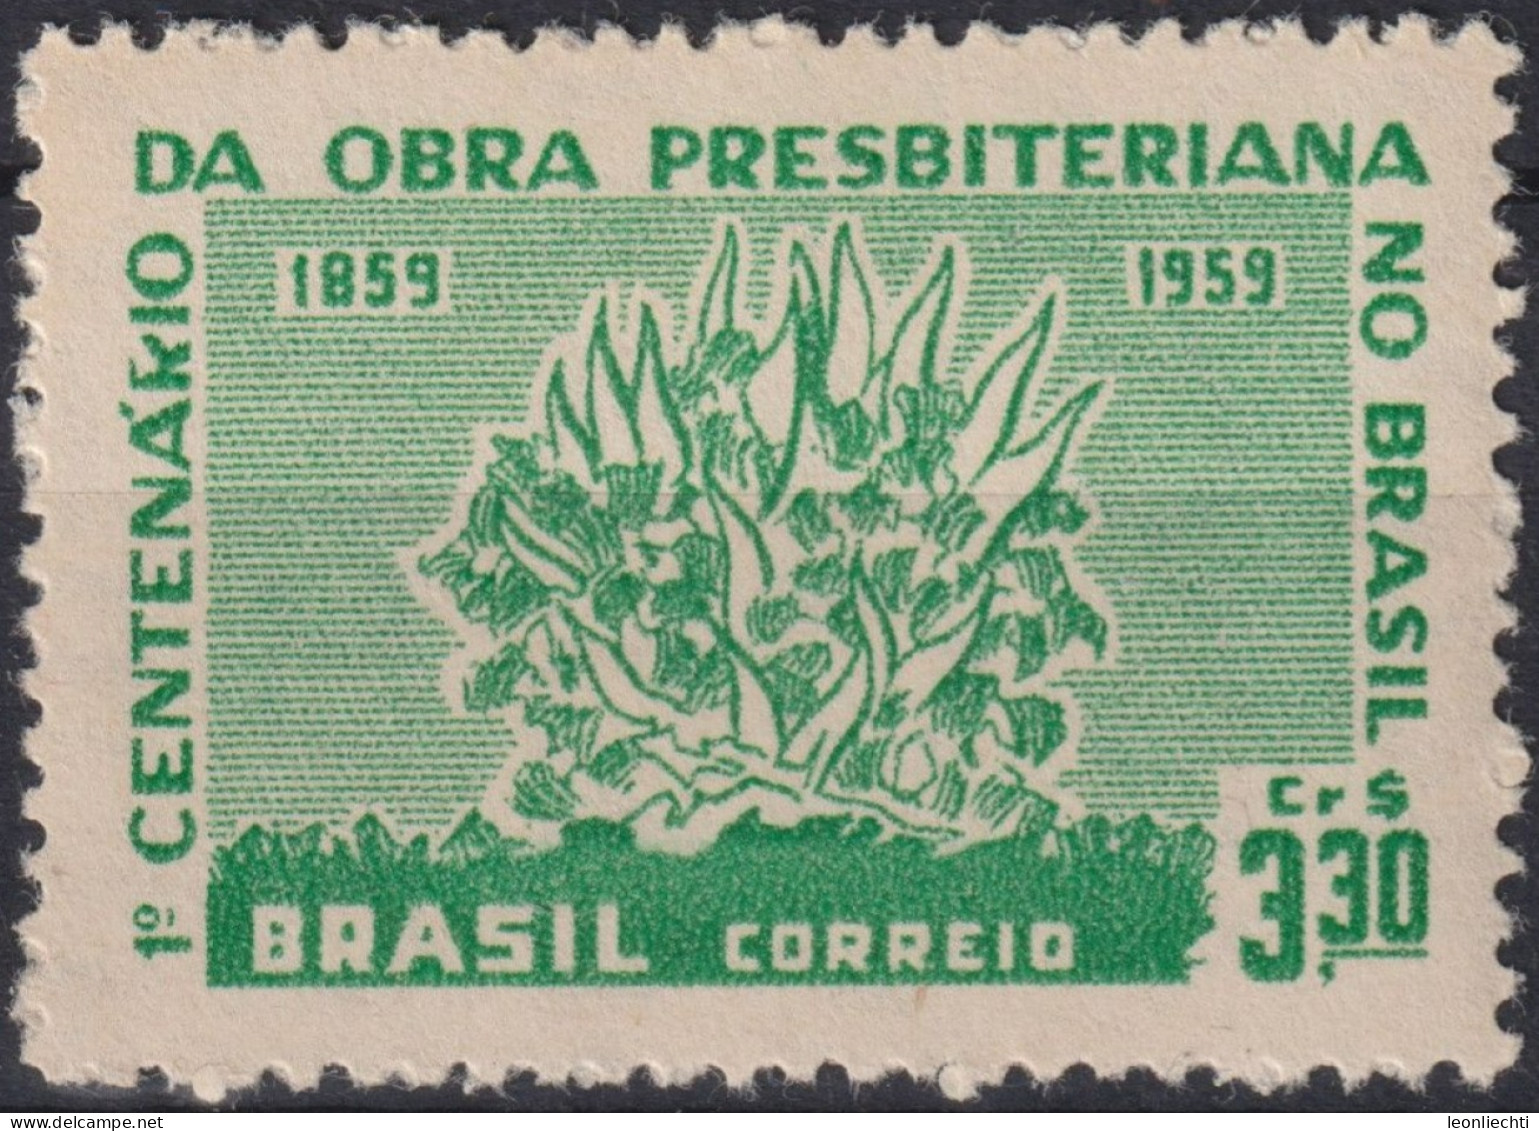 1959 Brasilien ** Mi:BR 970, Sn:BR 902, Yt:BR 687, Burning Bush, Brennender Busch - Unused Stamps